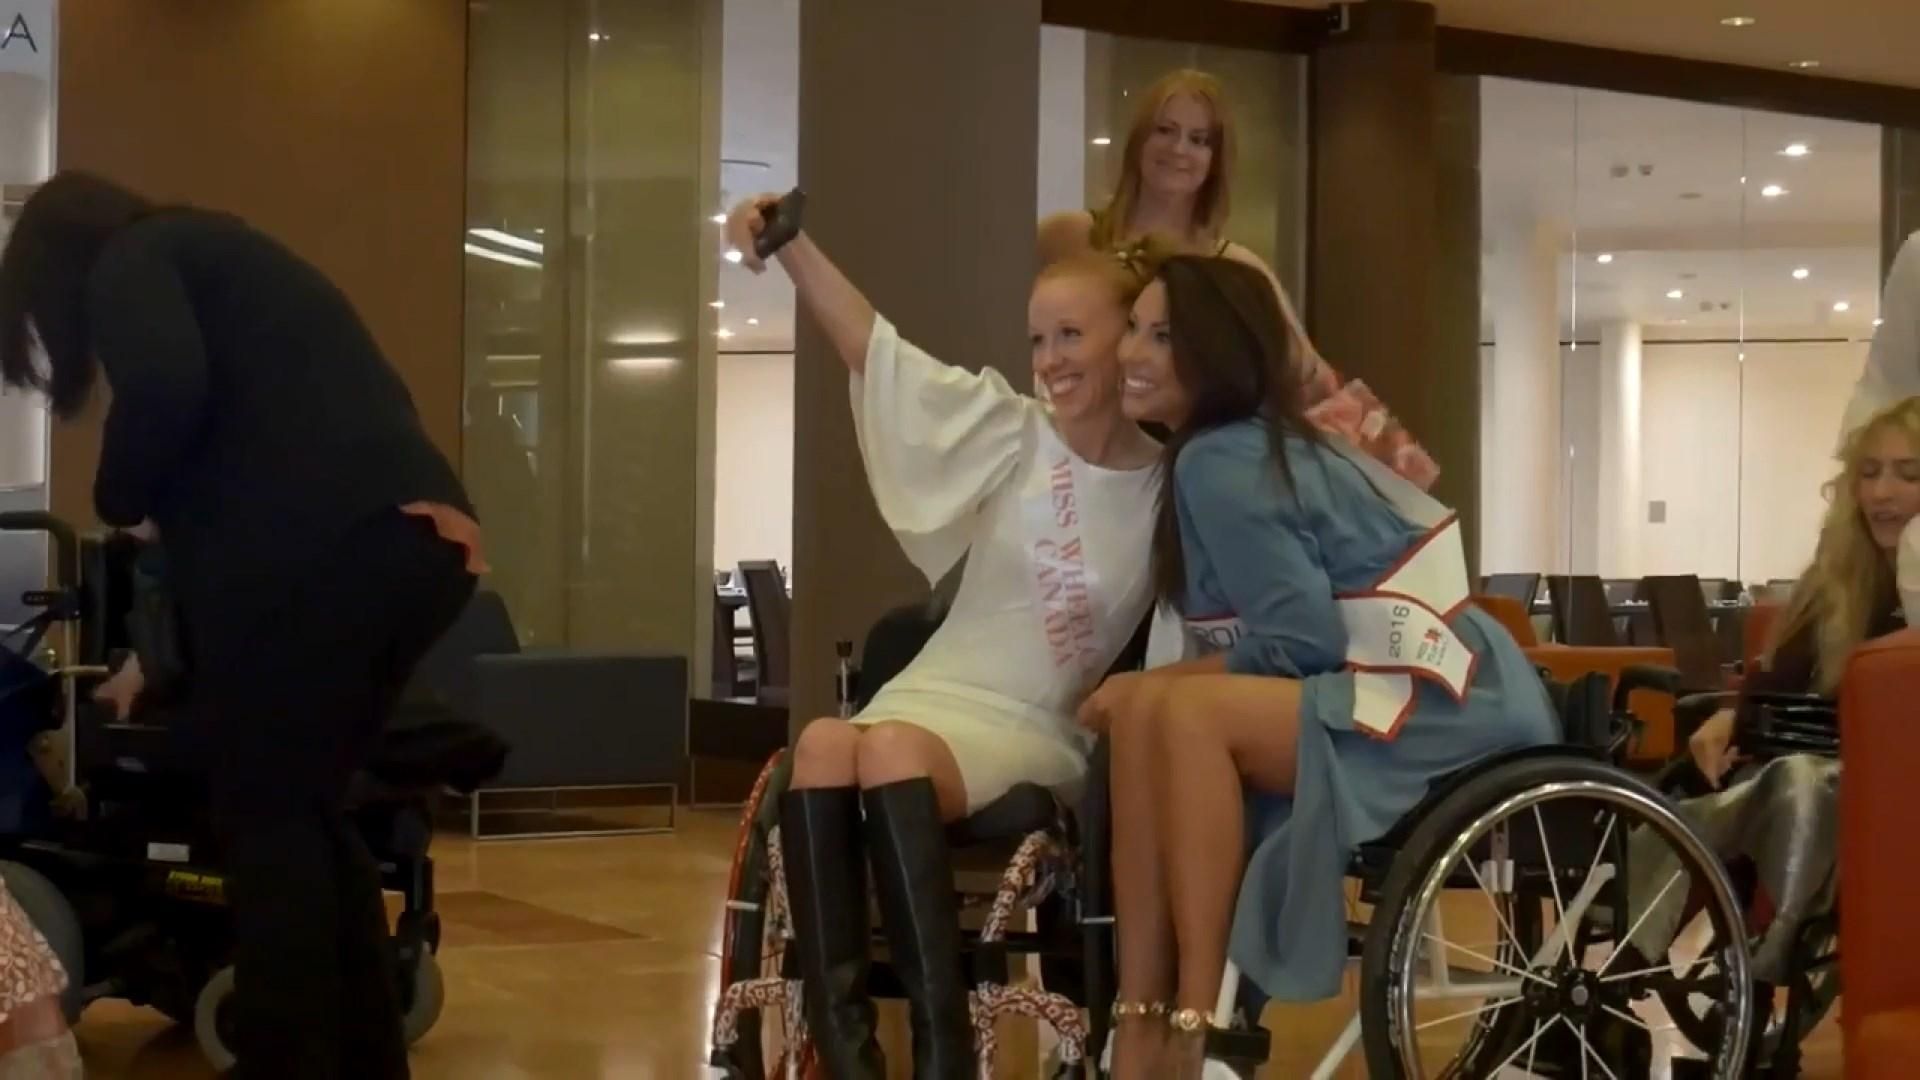 Девушки на колясках приняли участие в международном конкурсе красоты в Варшаве: вдохновляющее видео